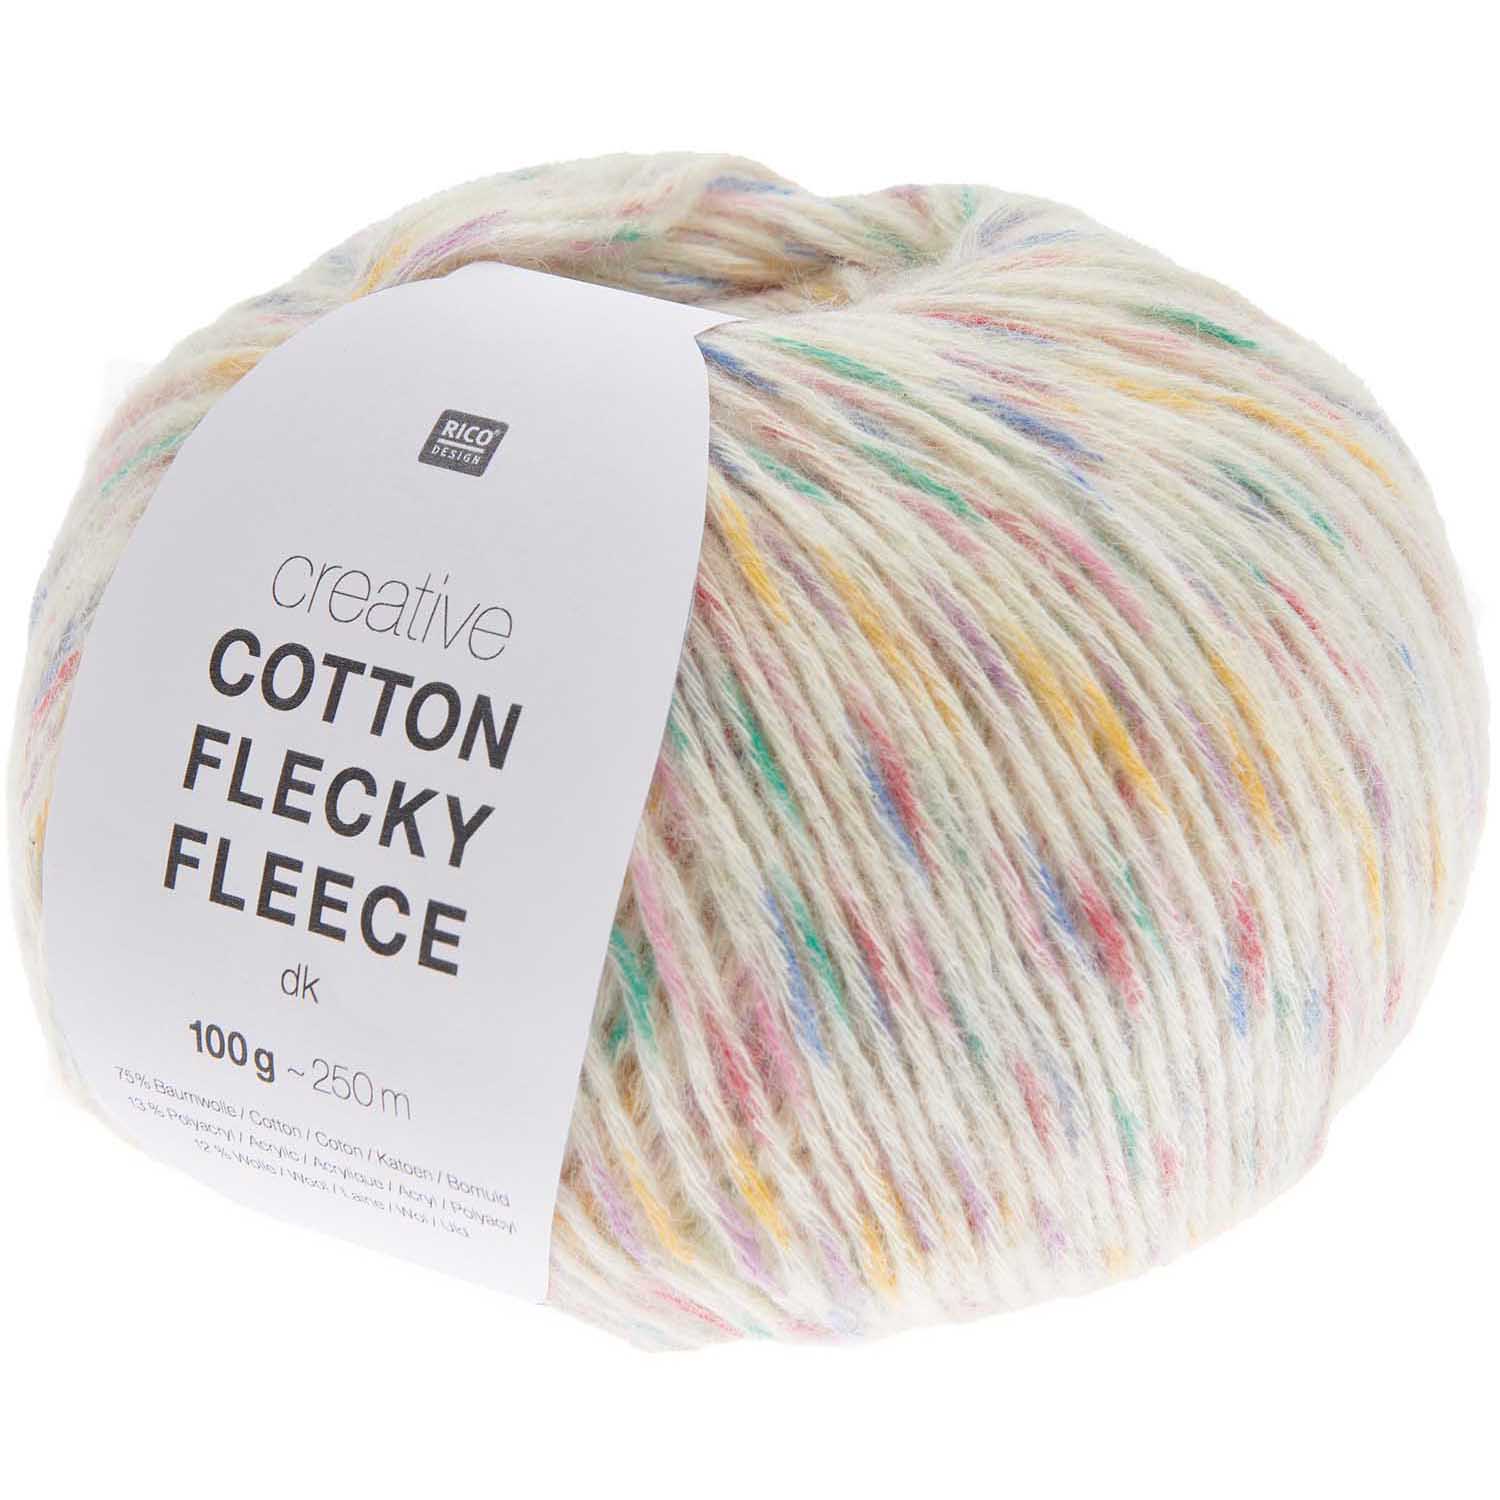 Cotton Flecky Fleece 004 Rainbow